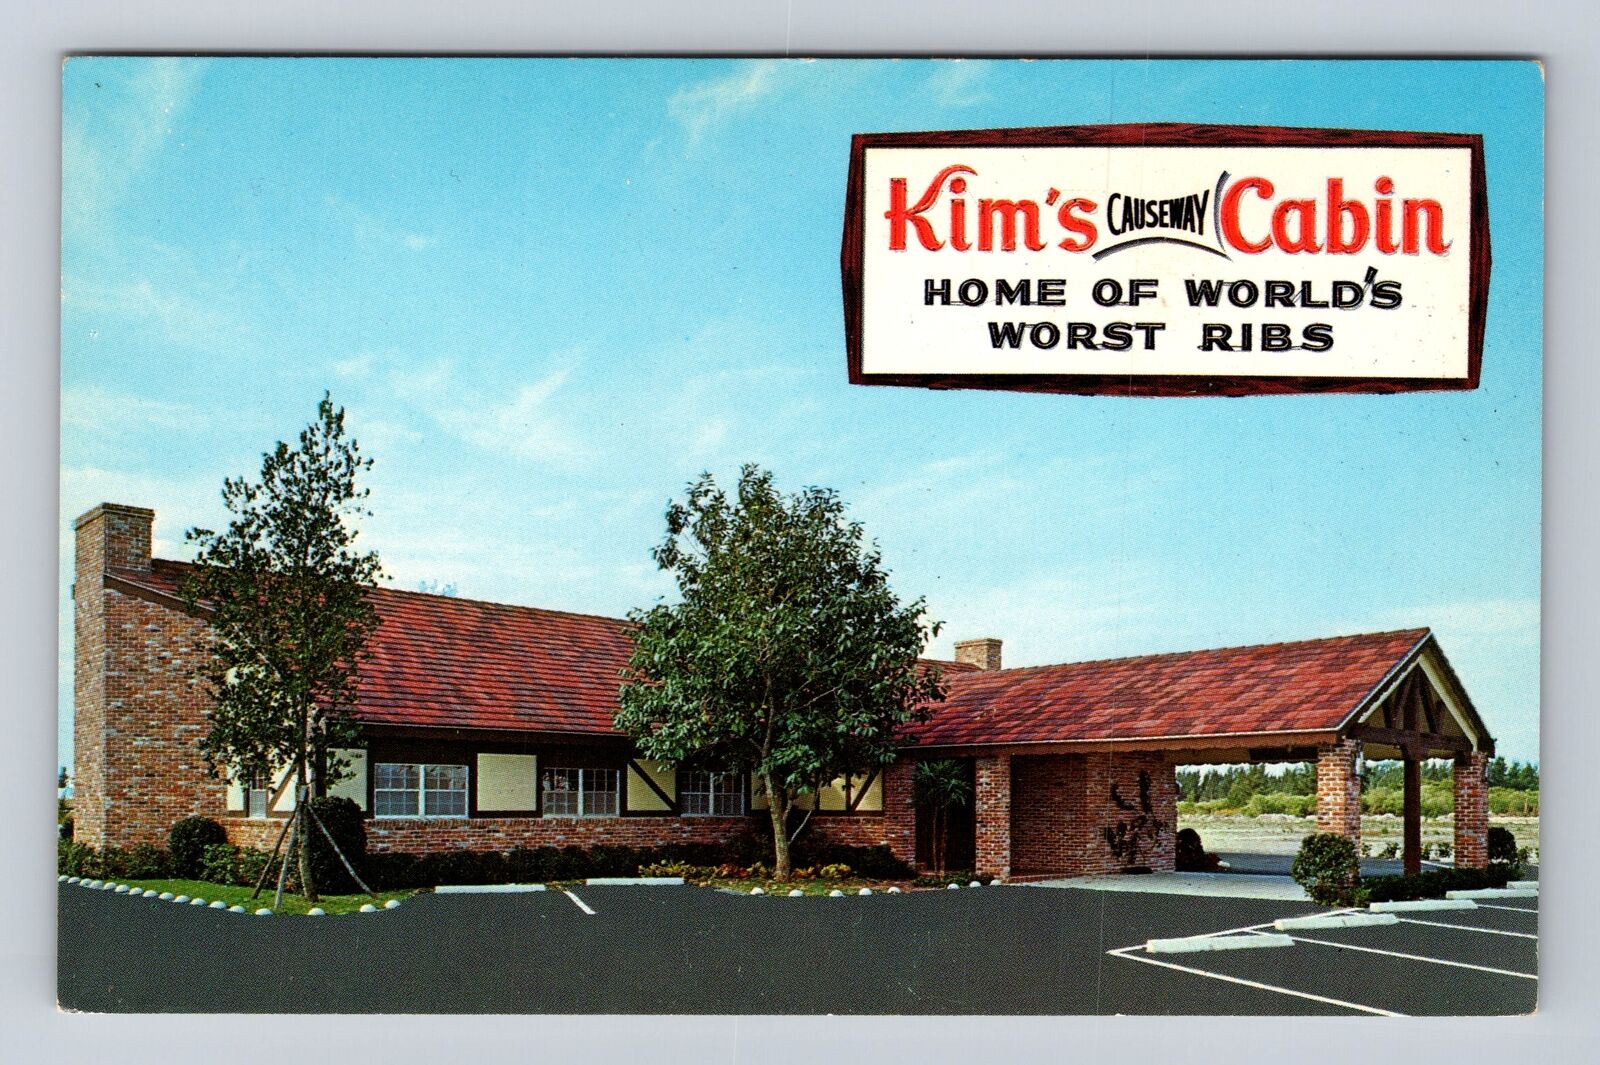 Ft Lauderdale FL-Florida, Kim's Causeway Cabin, Advertising Vintage Postcard